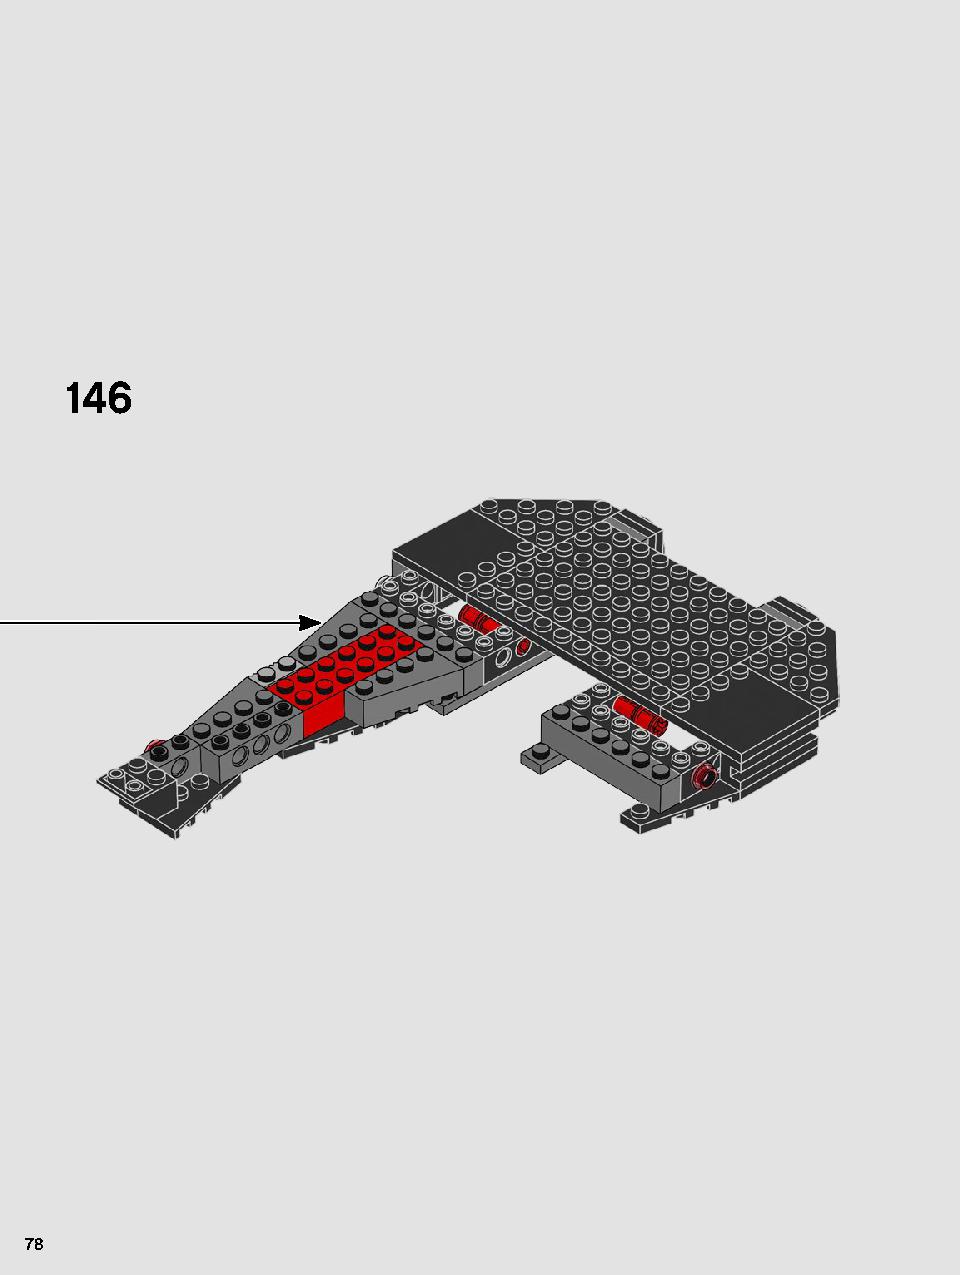 스타워즈 카일로 렌의 셔틀™ 75256 레고 세트 제품정보 레고 조립설명서 78 page